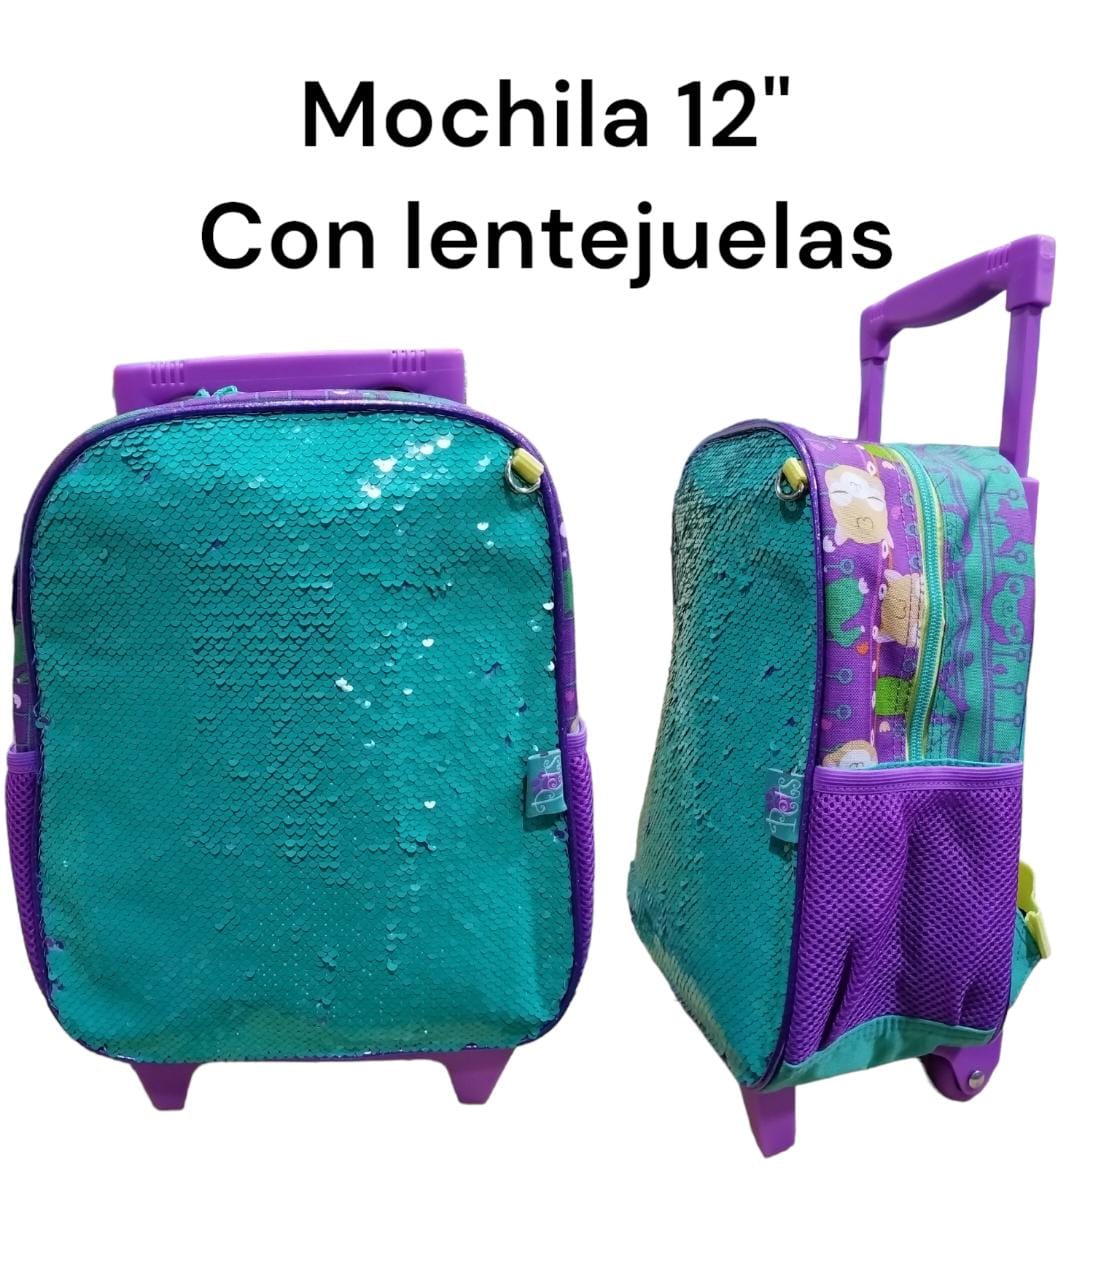 Mochila 12